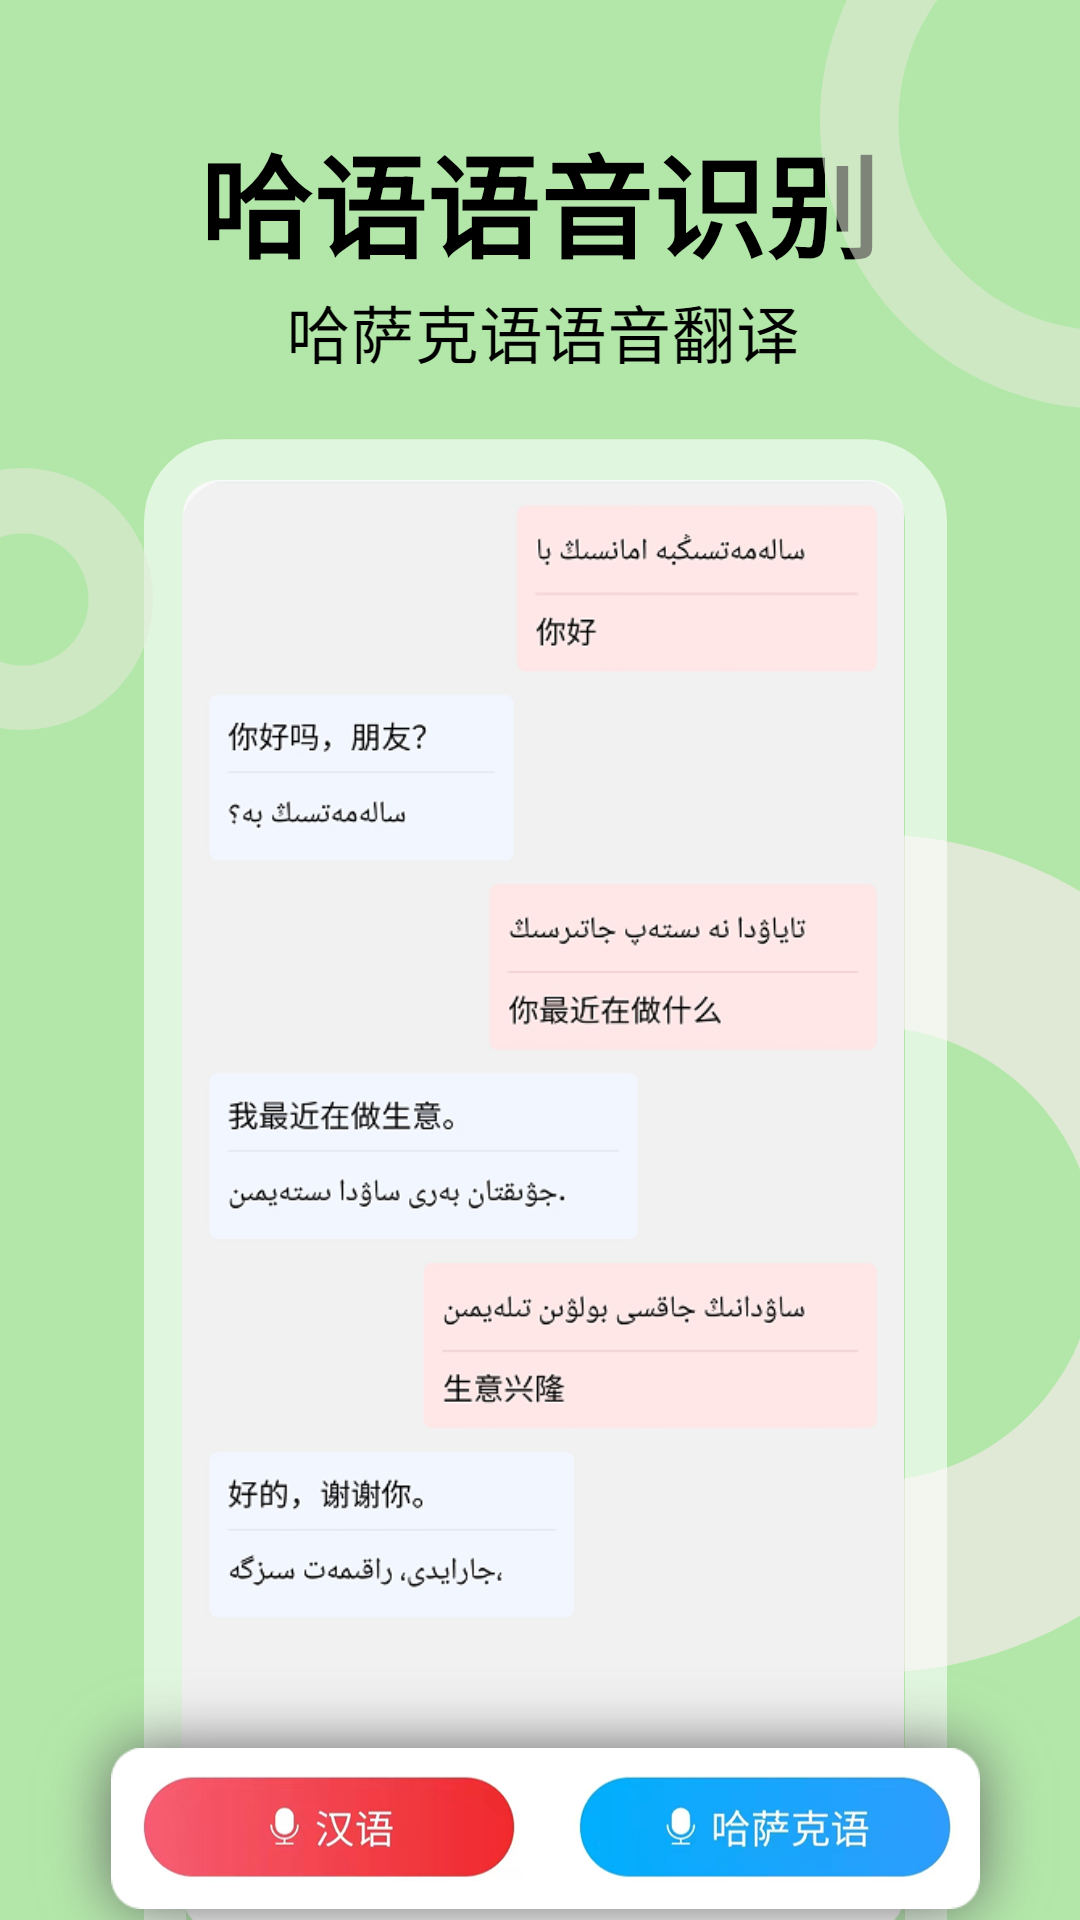 哈汉翻译通-哈萨克语翻译器 v3.3.7免费版截图3